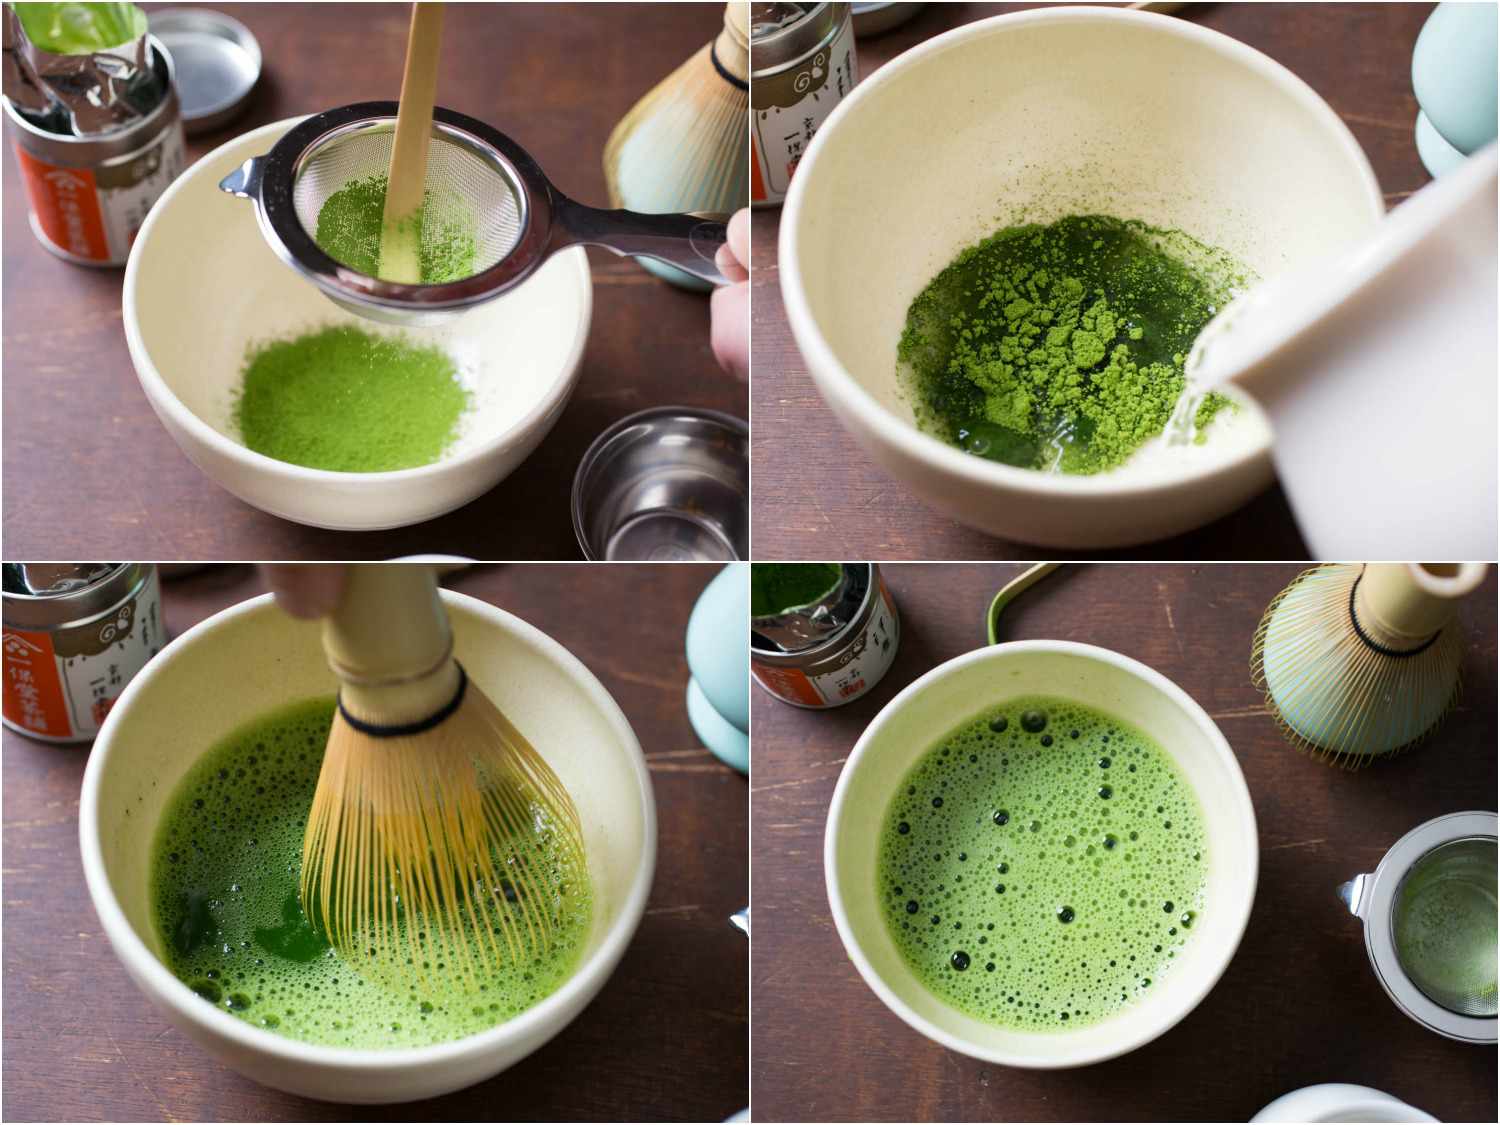 20150206-tea-vicky-wasik-matcha-tea-service.jpg